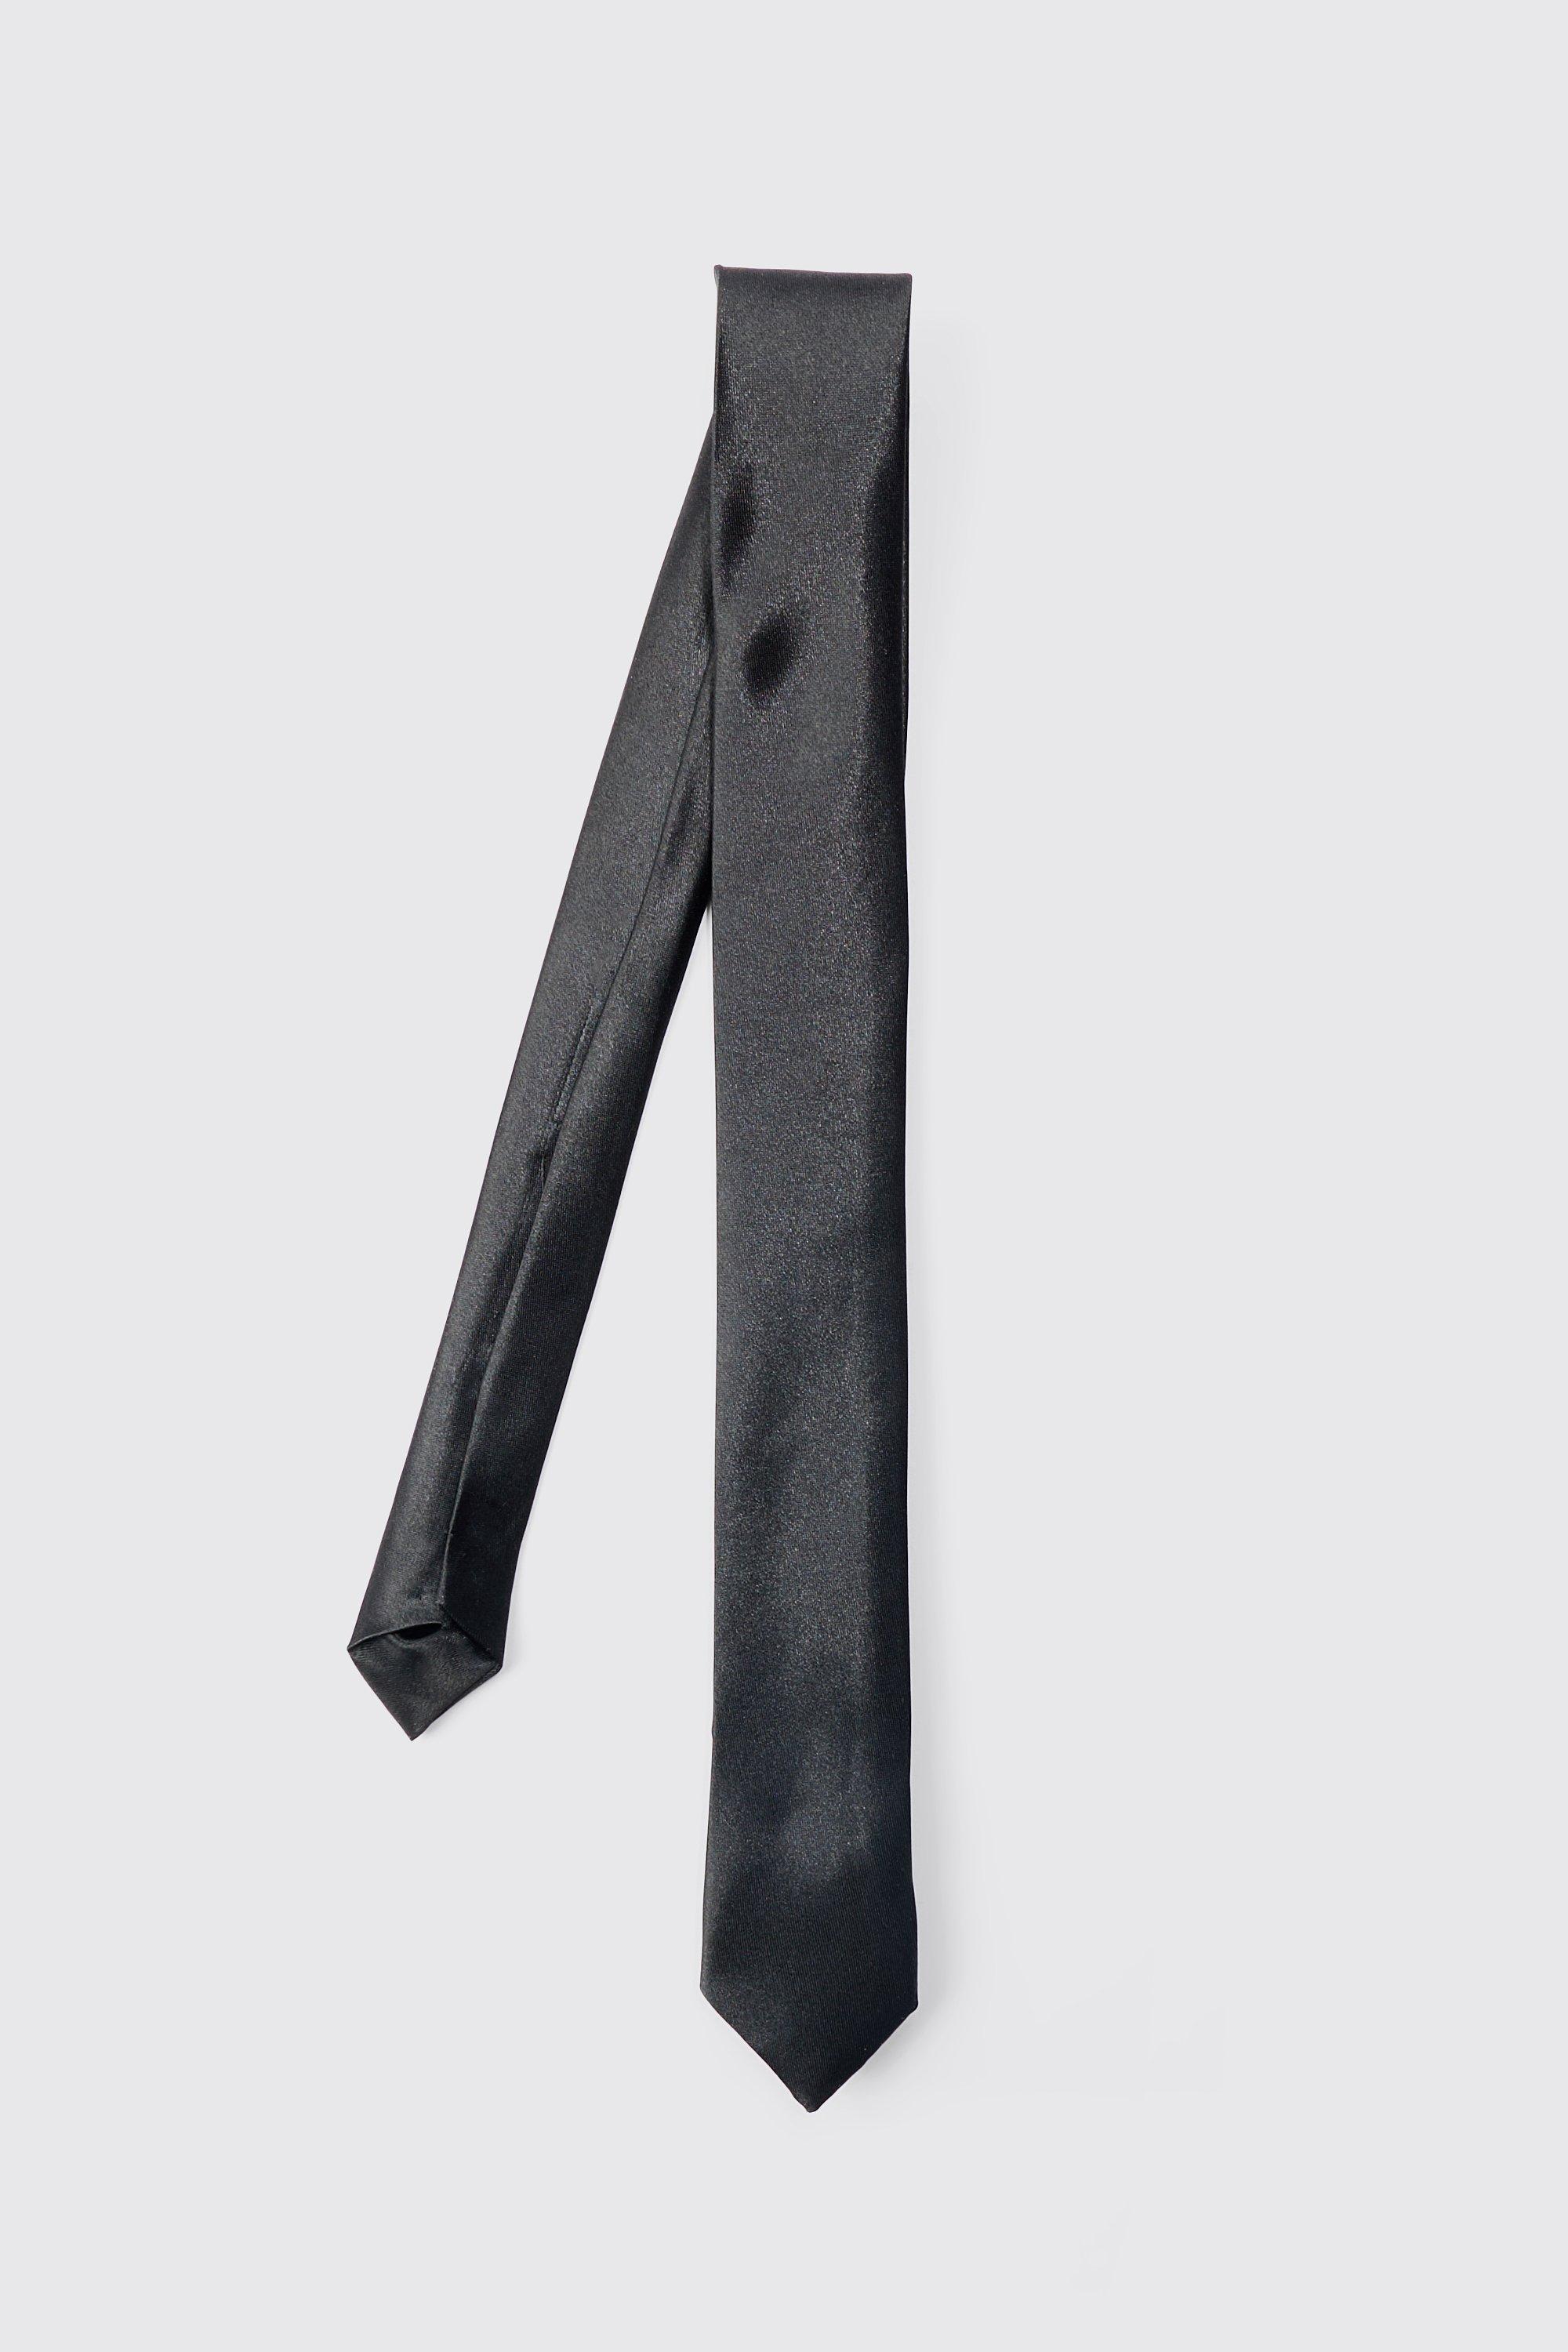 Image of Basic Satin Tie In Black, Nero